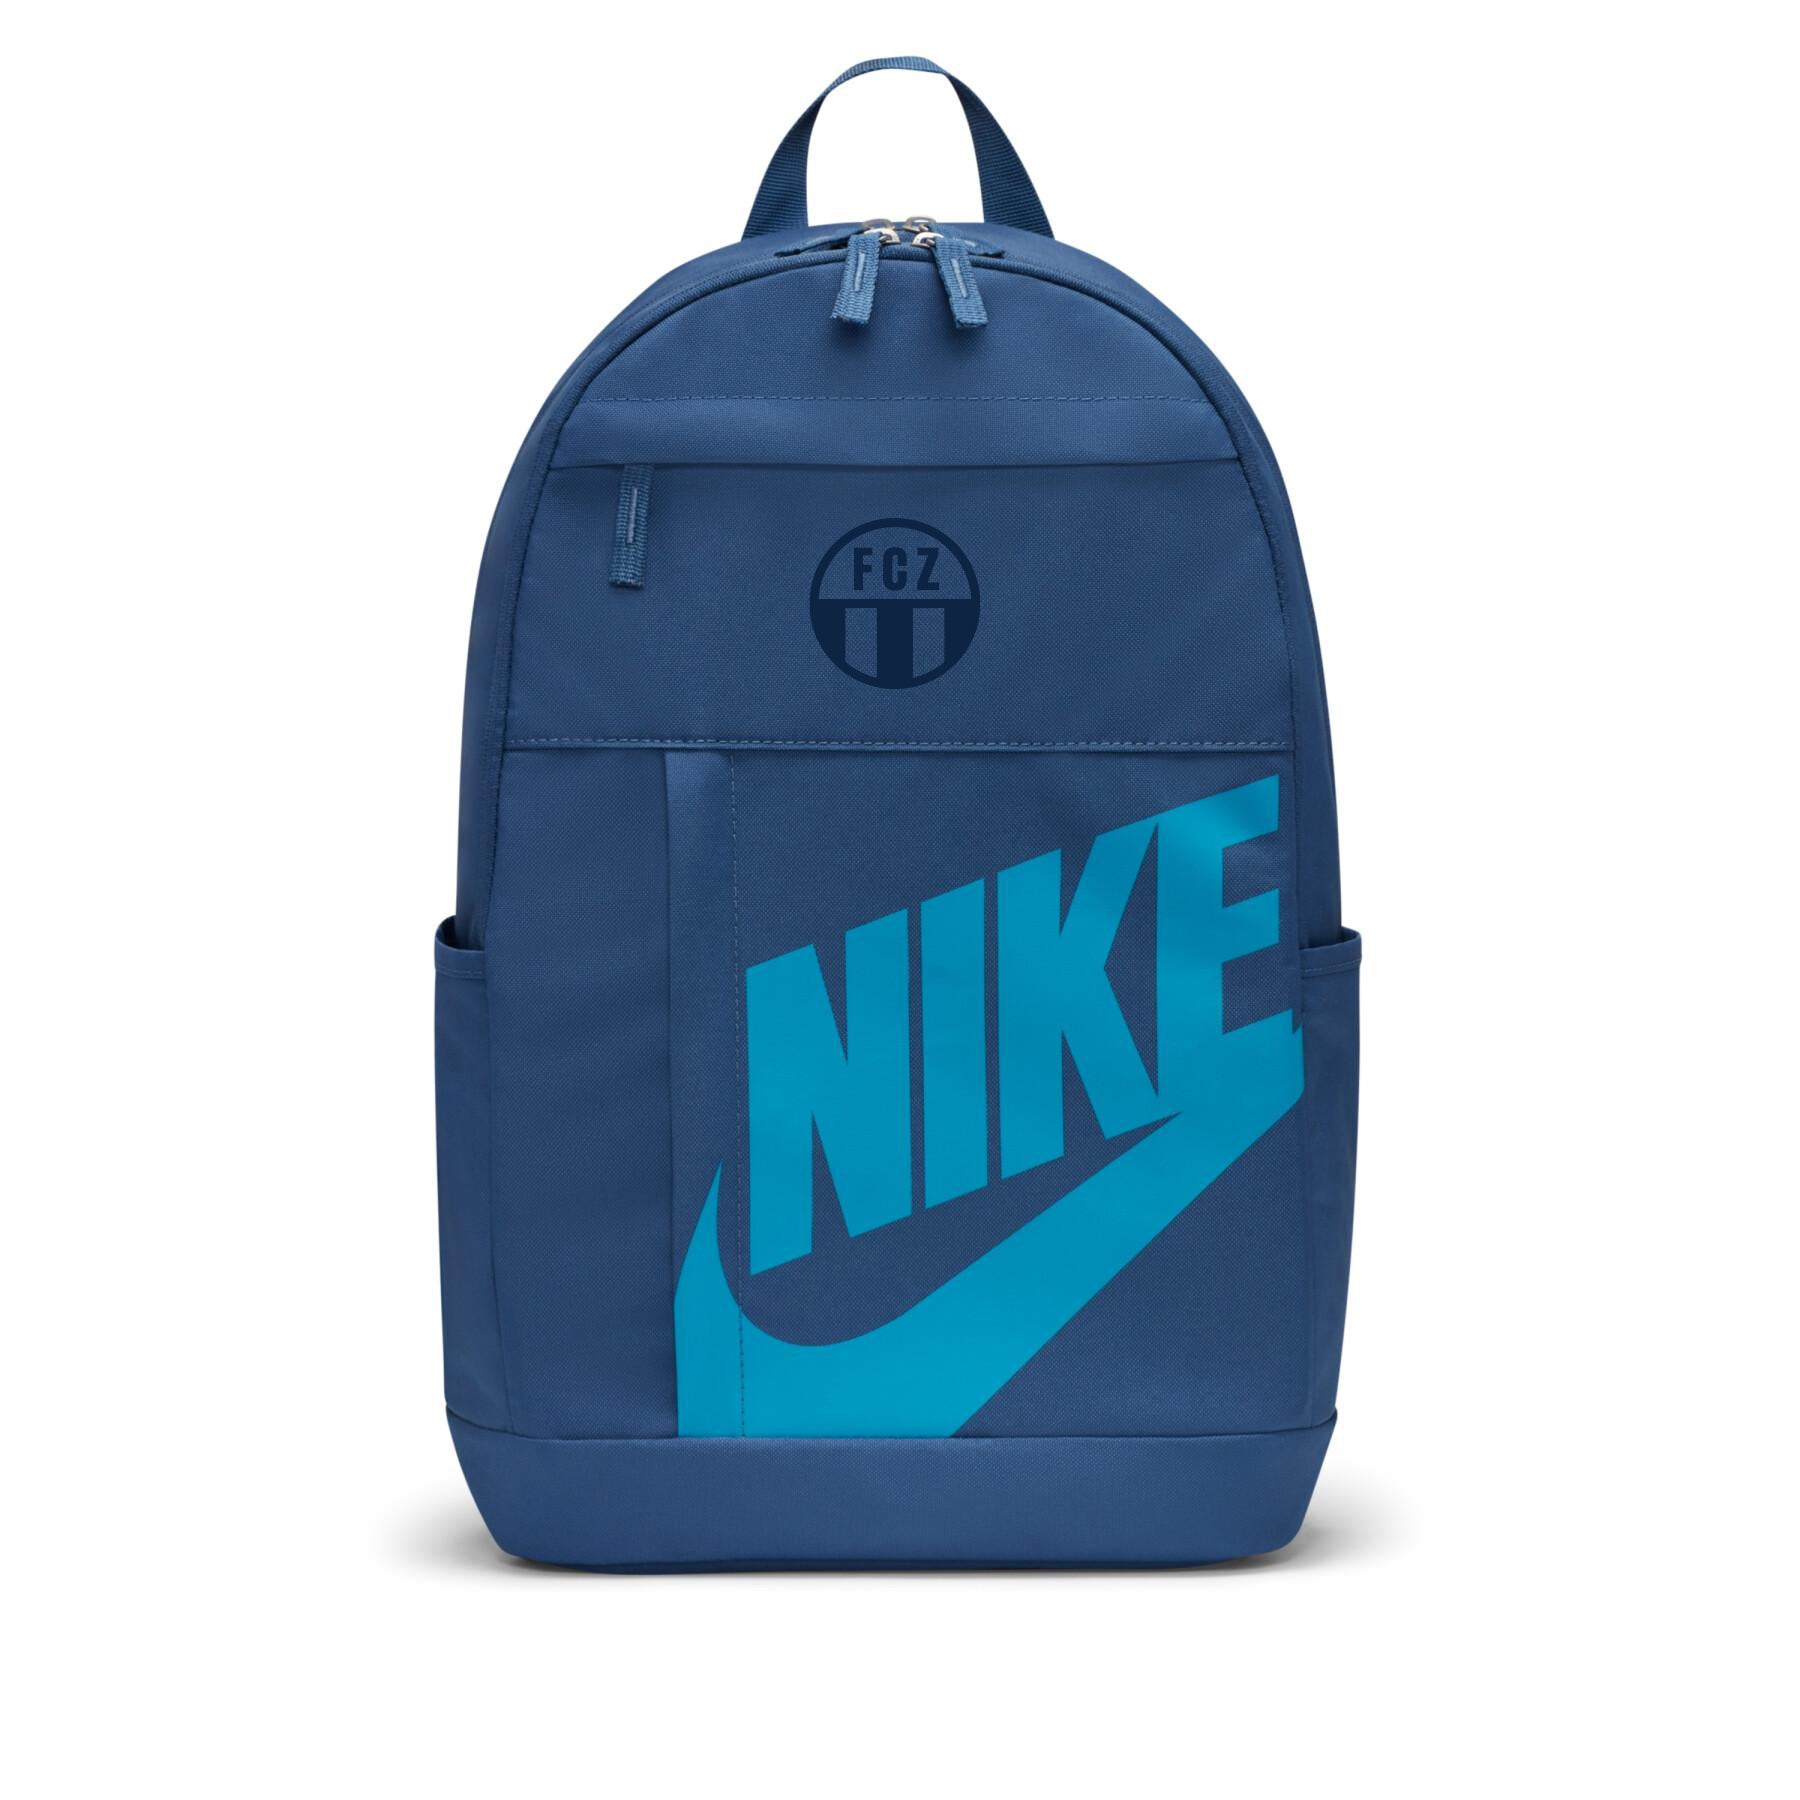 Rucksack Nike Elemental Blau